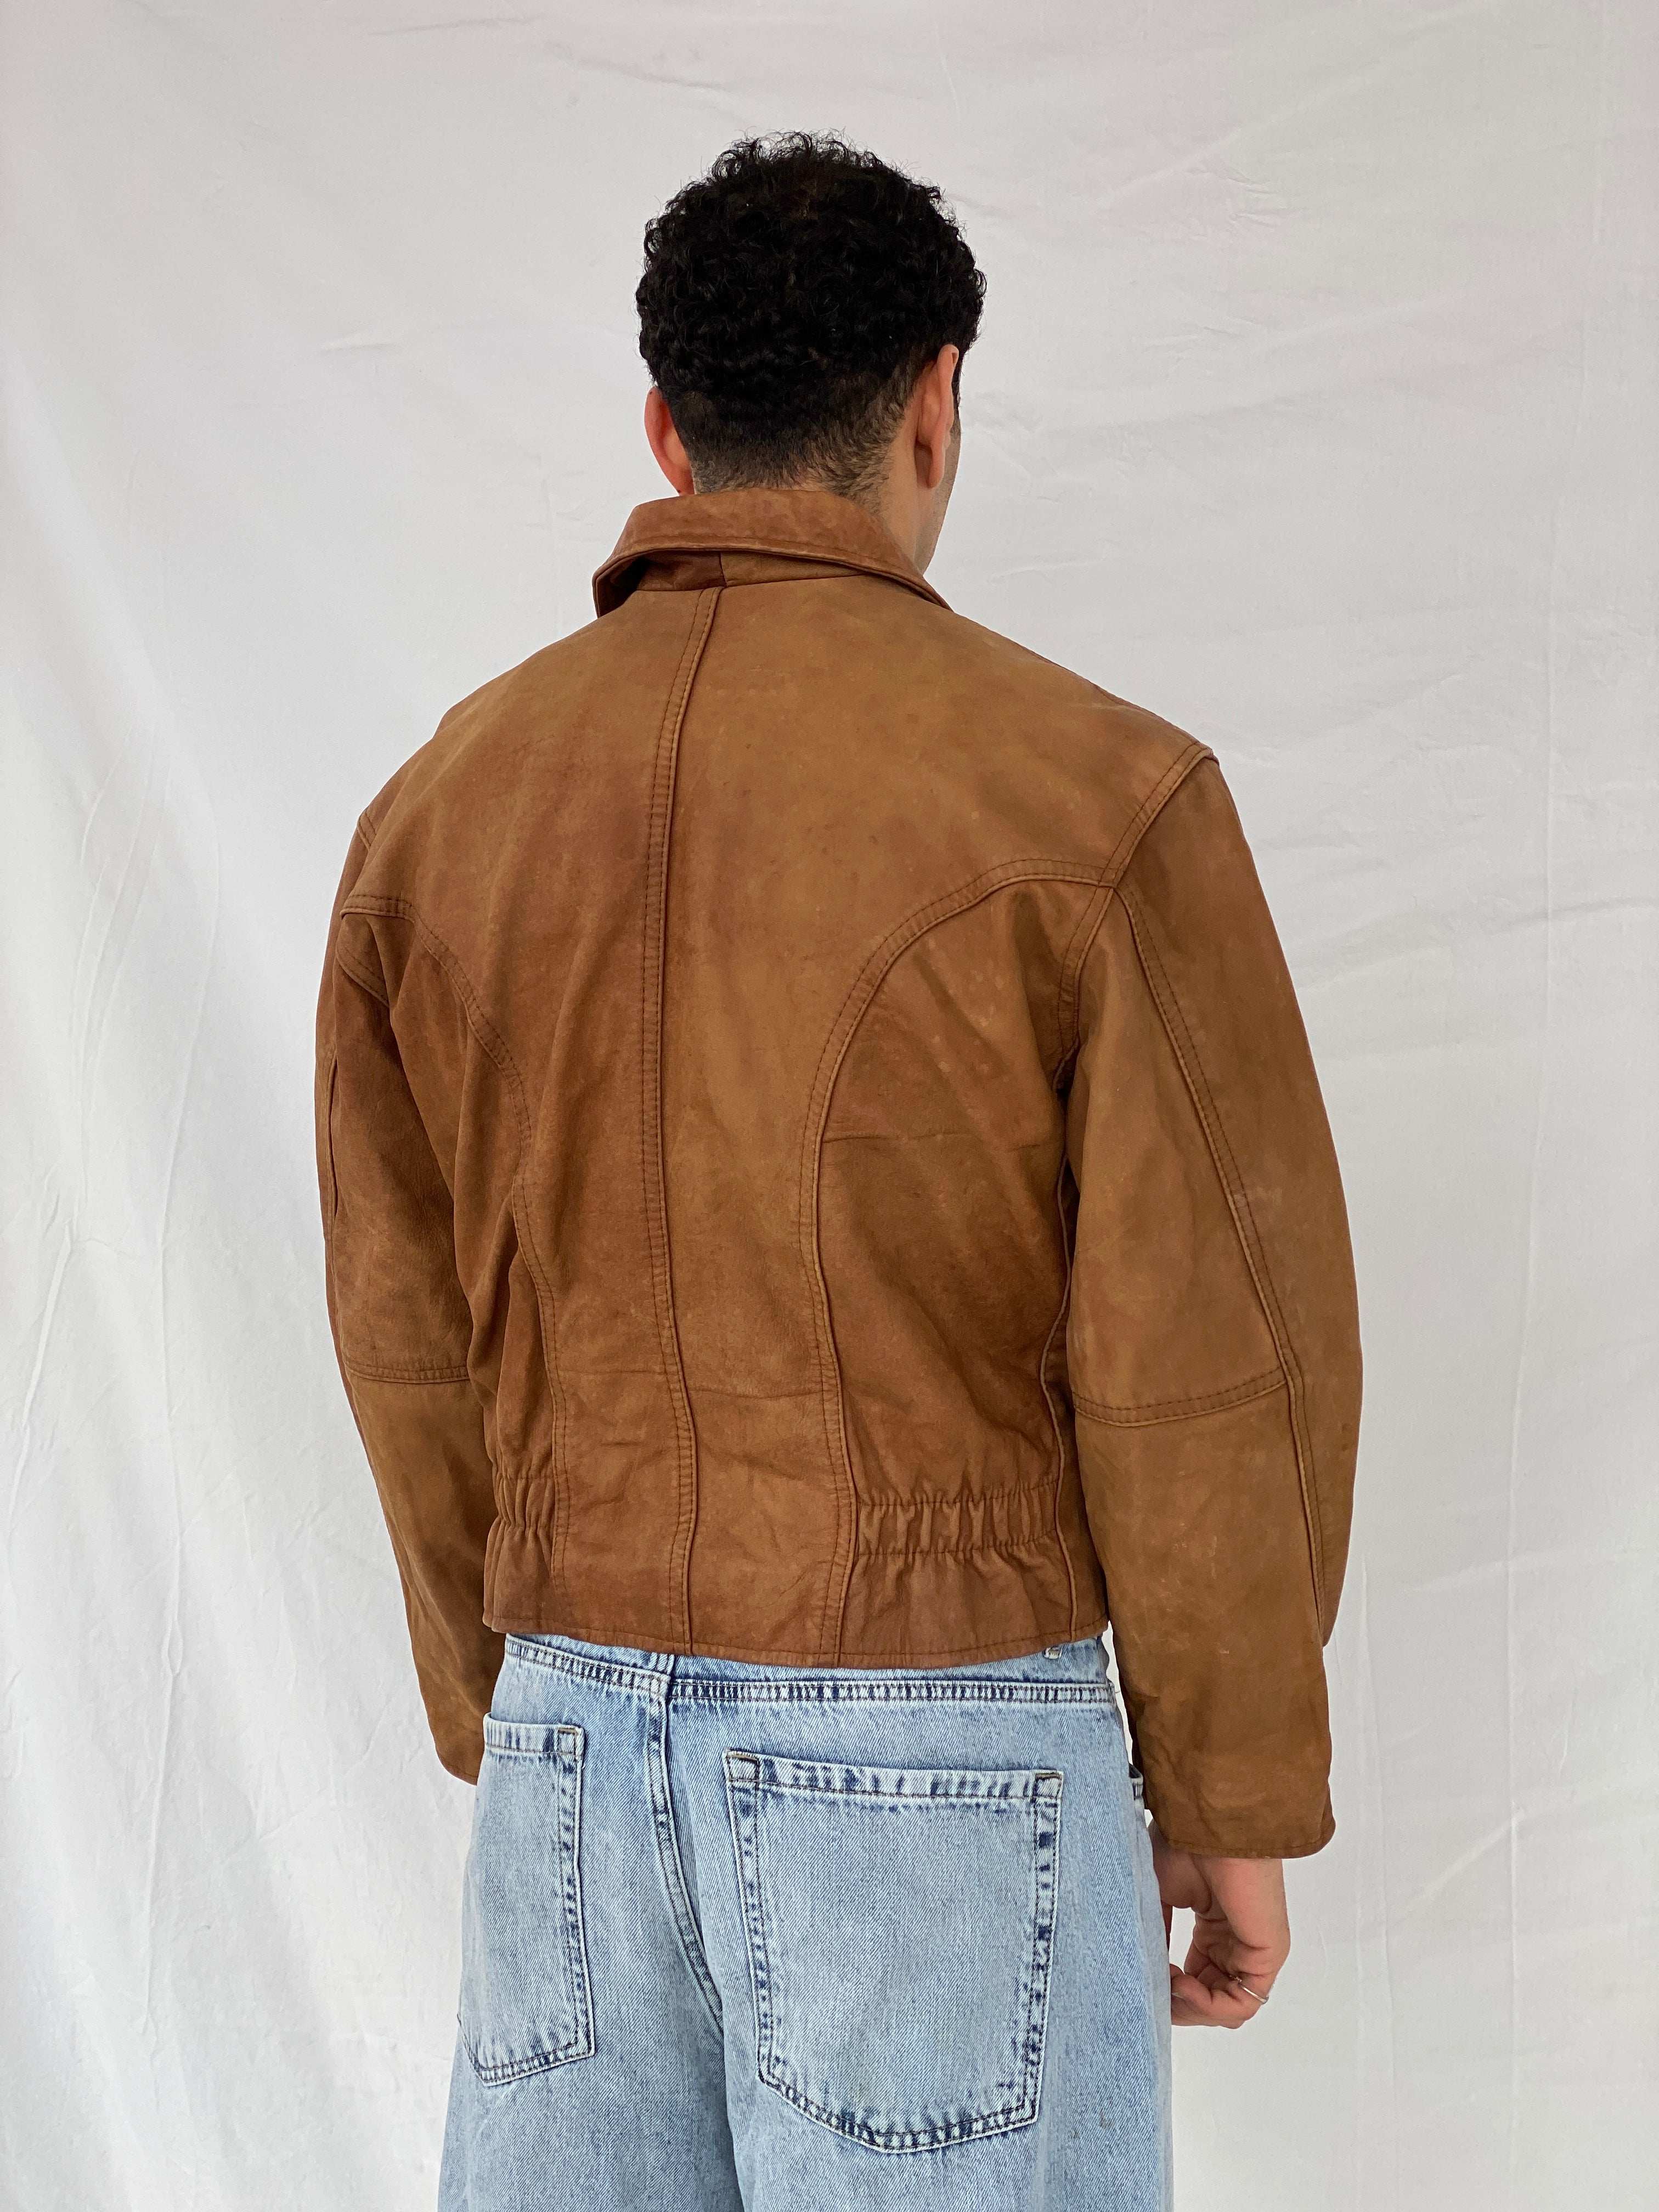 Vintage 90s Riri Zipper Genuine Leather Brown Jacket - Size M - Balagan Vintage Leather Jacket 90s, Abdullah, brown, brown leather, genuine leather, genuine leather jacket, leather jacket